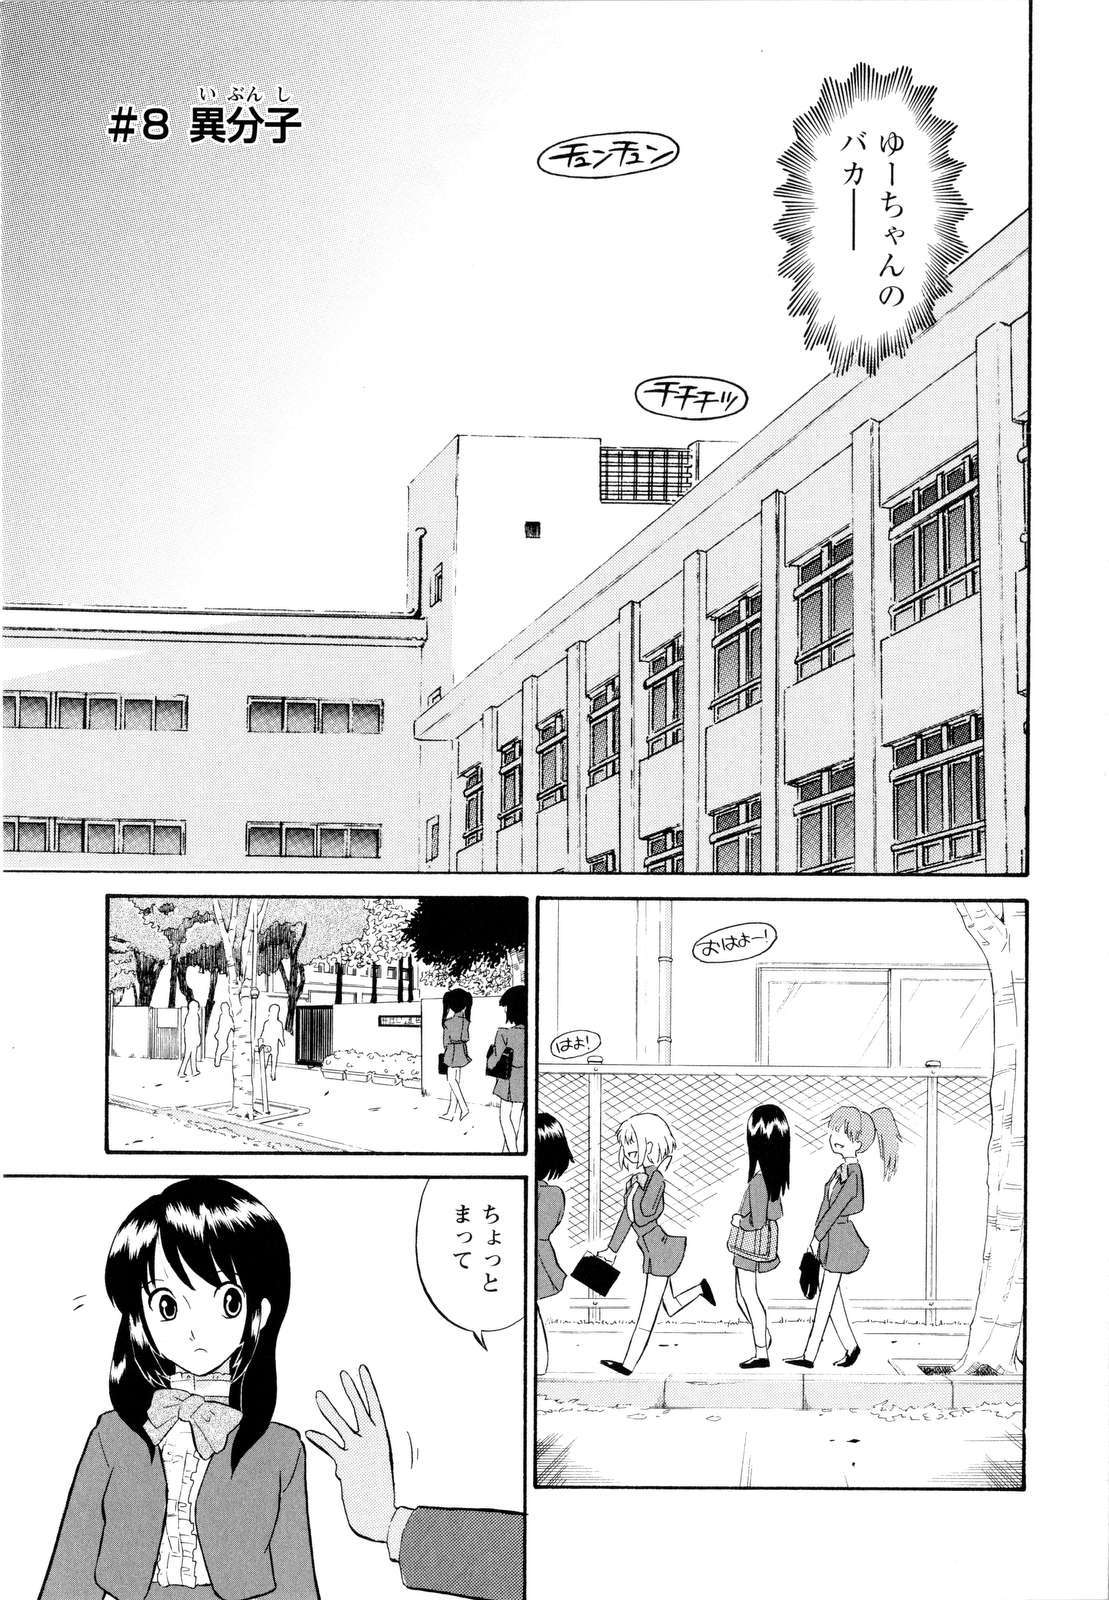 [Dozamura] Haruka 69 Vol.2 page 10 full